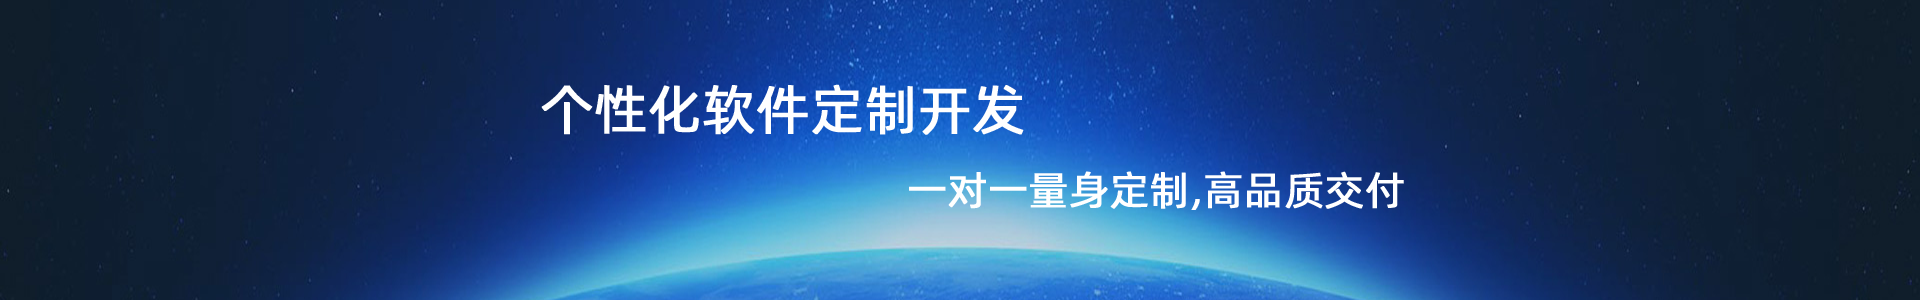 惠州软件公司 惠州软件开发 惠州网站建设 